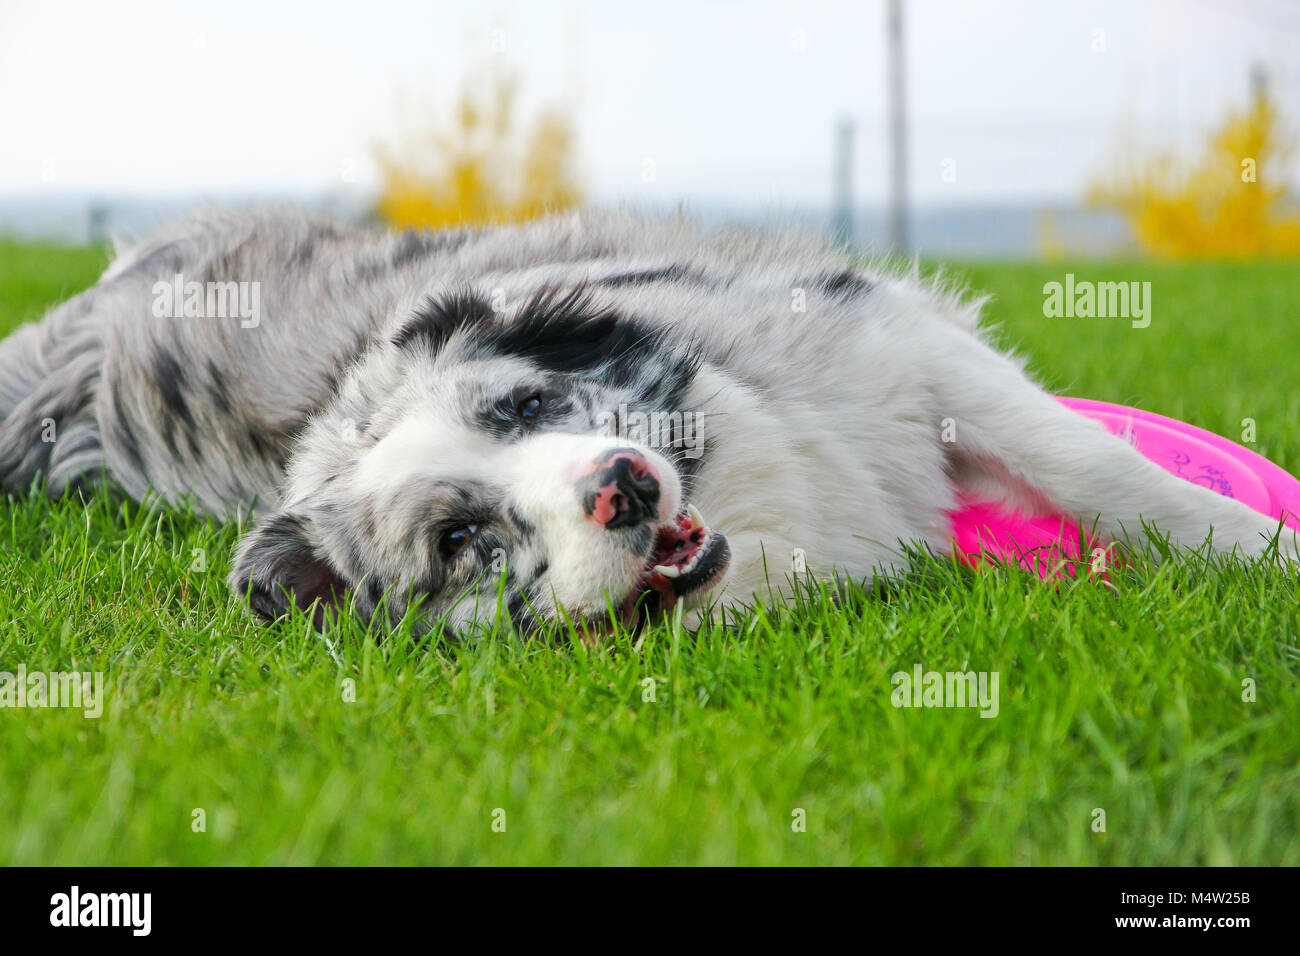 Un mignon jeune femelle berger australien est couché dans l'herbe et la tenue de son frisbee. Elle a l'air heureux et satisfaits. Banque D'Images